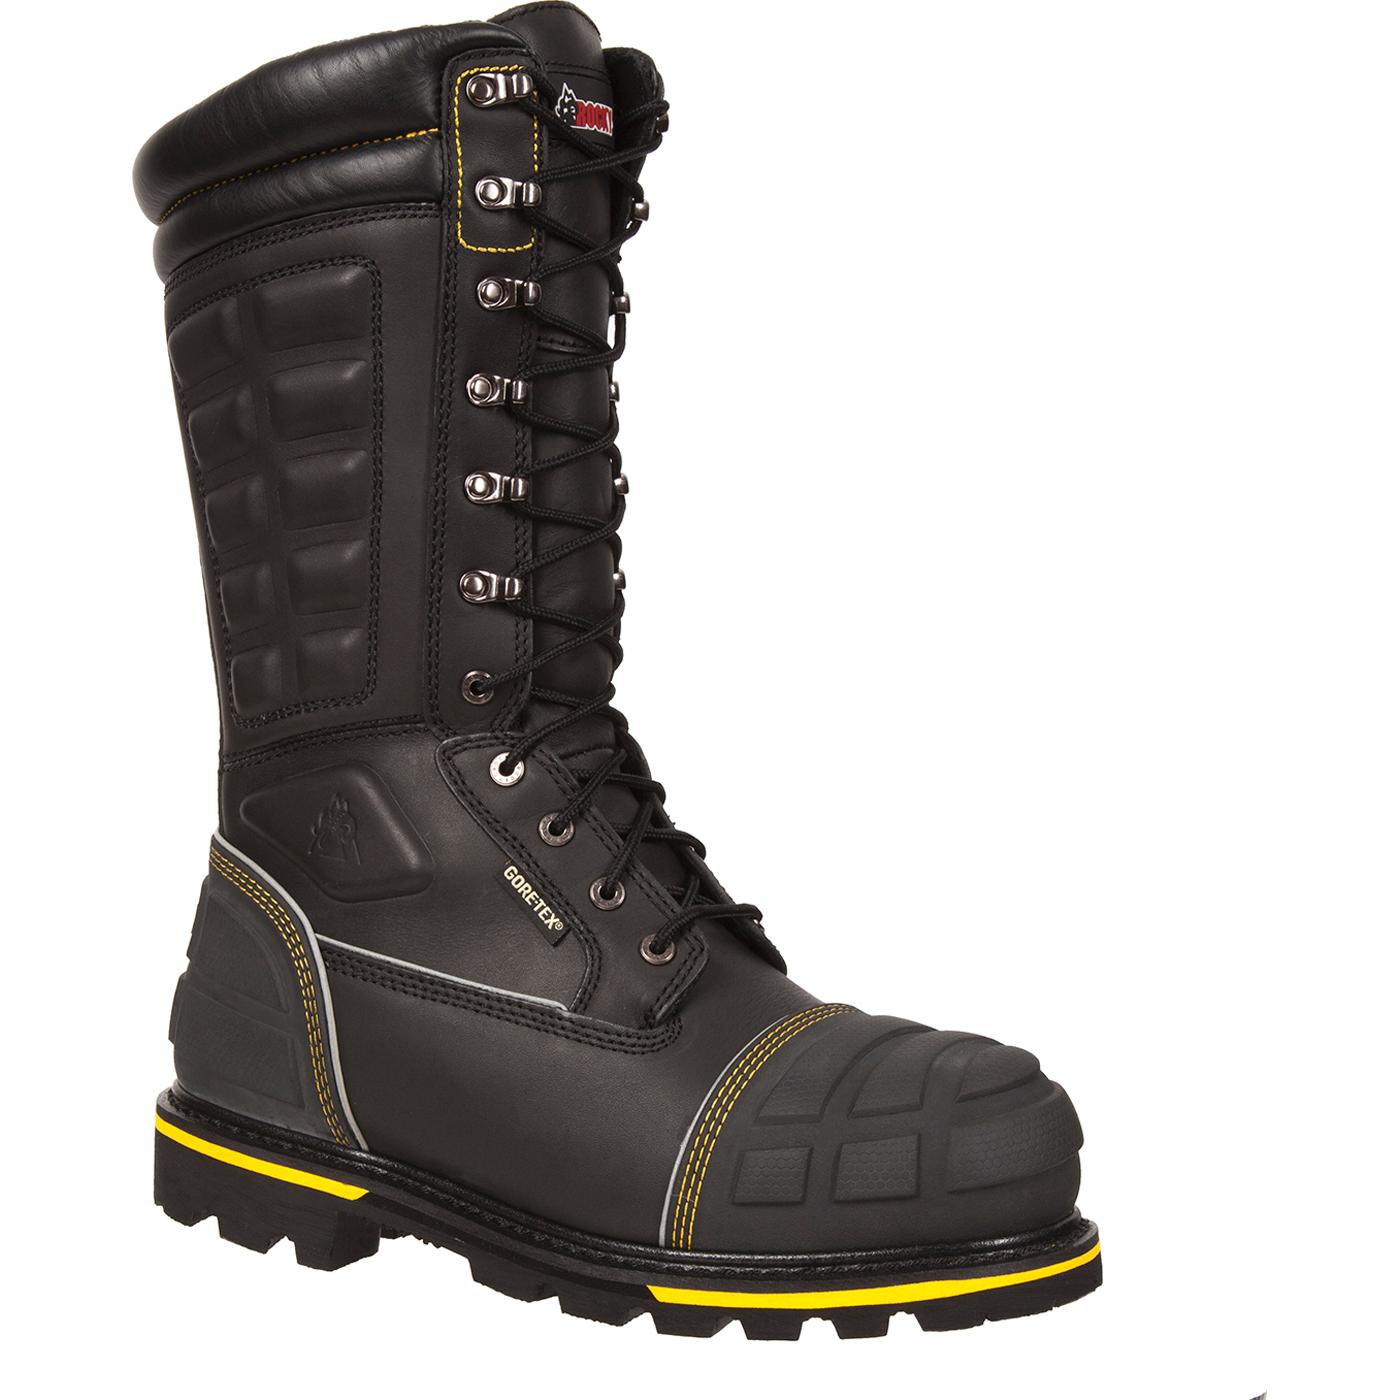 Rocky Puncture Resistant GORE-TEX Met-Guard Boot - HAM Miner Boot